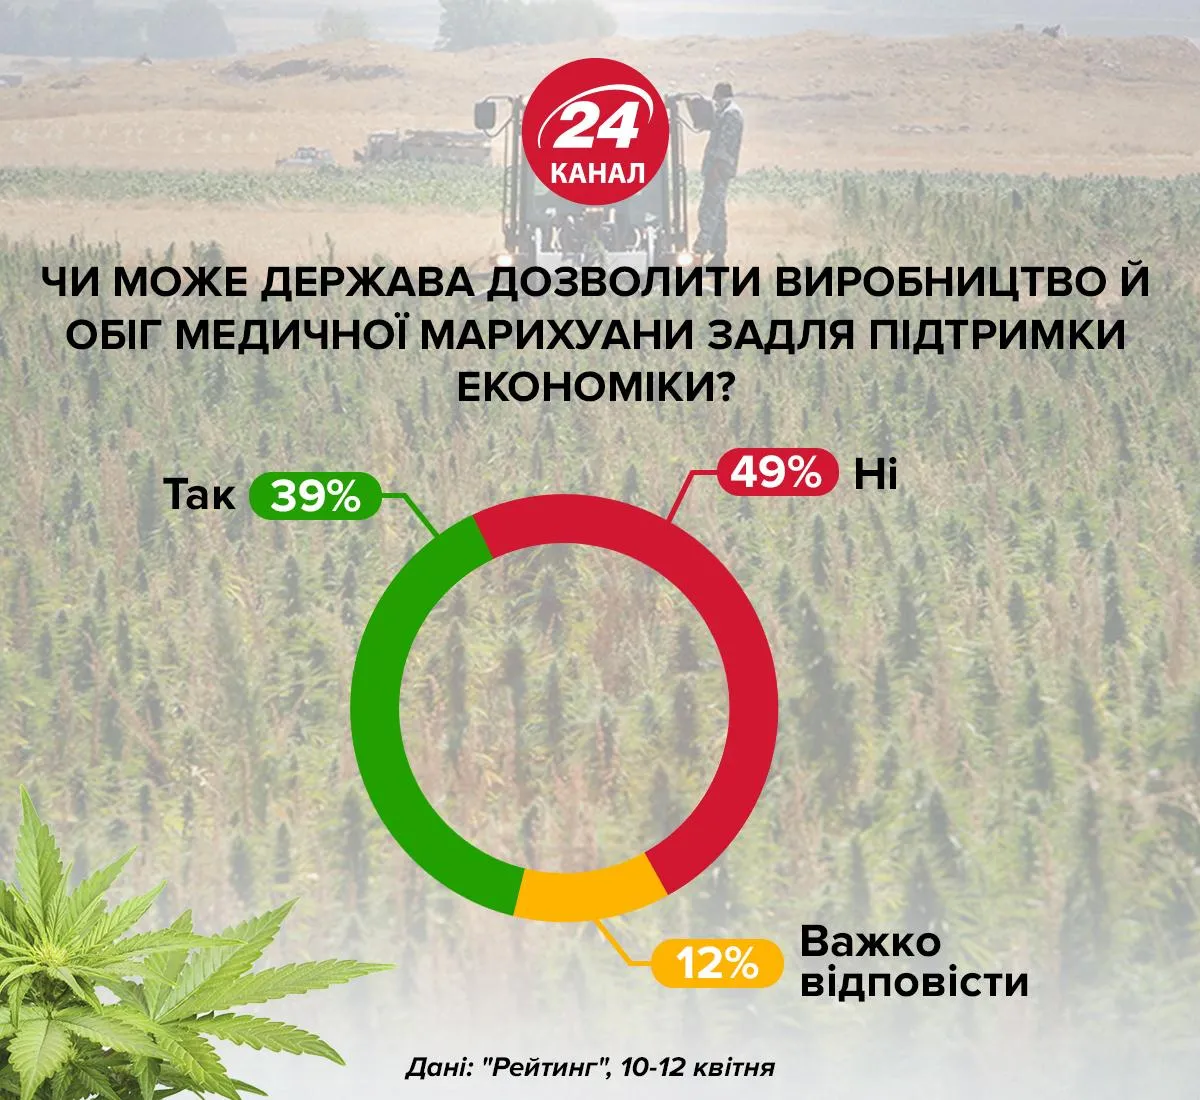 медична марихуана канабіс легалізація Україна за і проти опитування